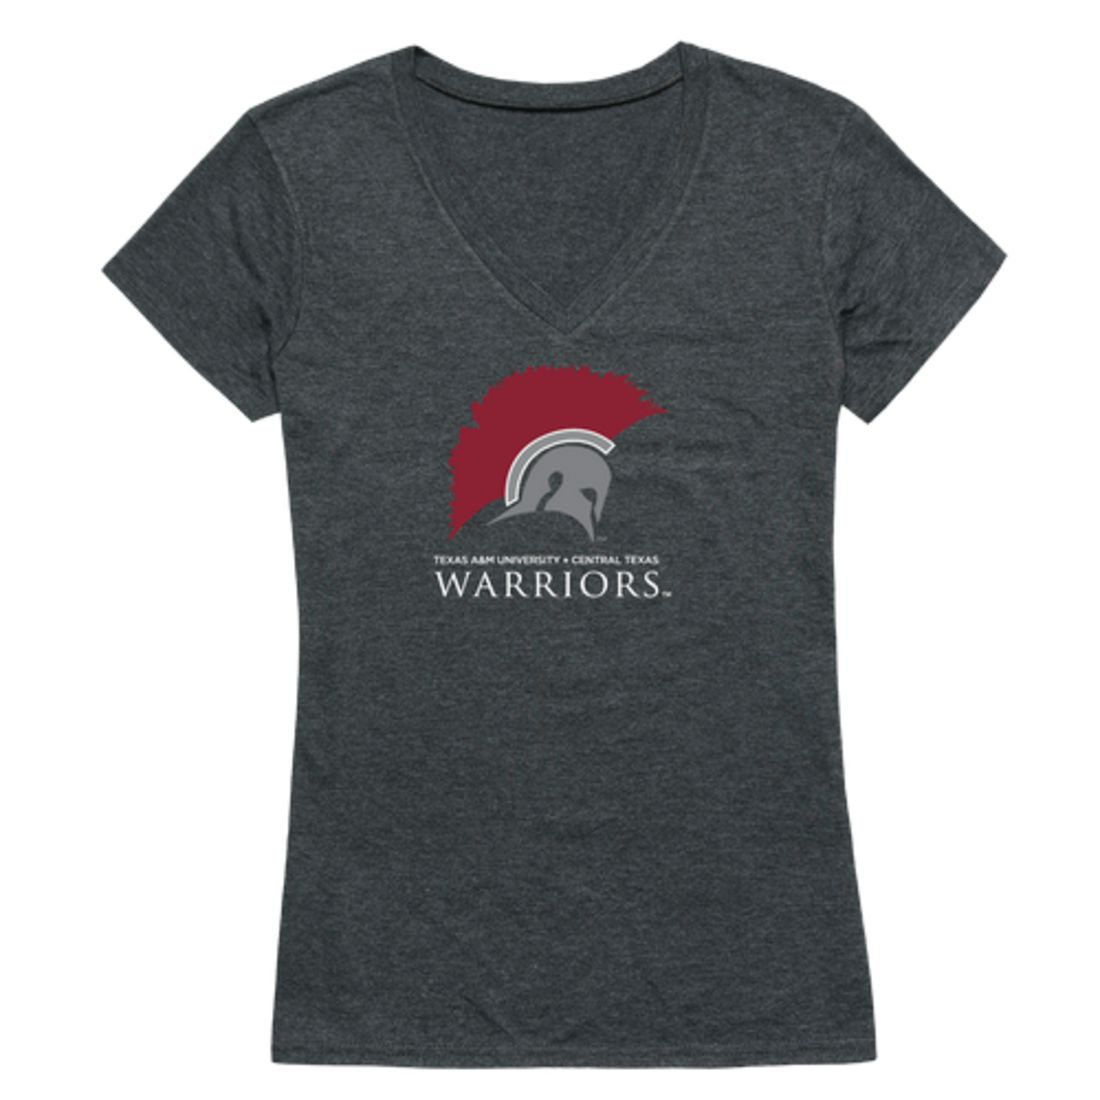 Texas A&M University-Central Texas Warriors Womens Cinder T-Shirt Tee